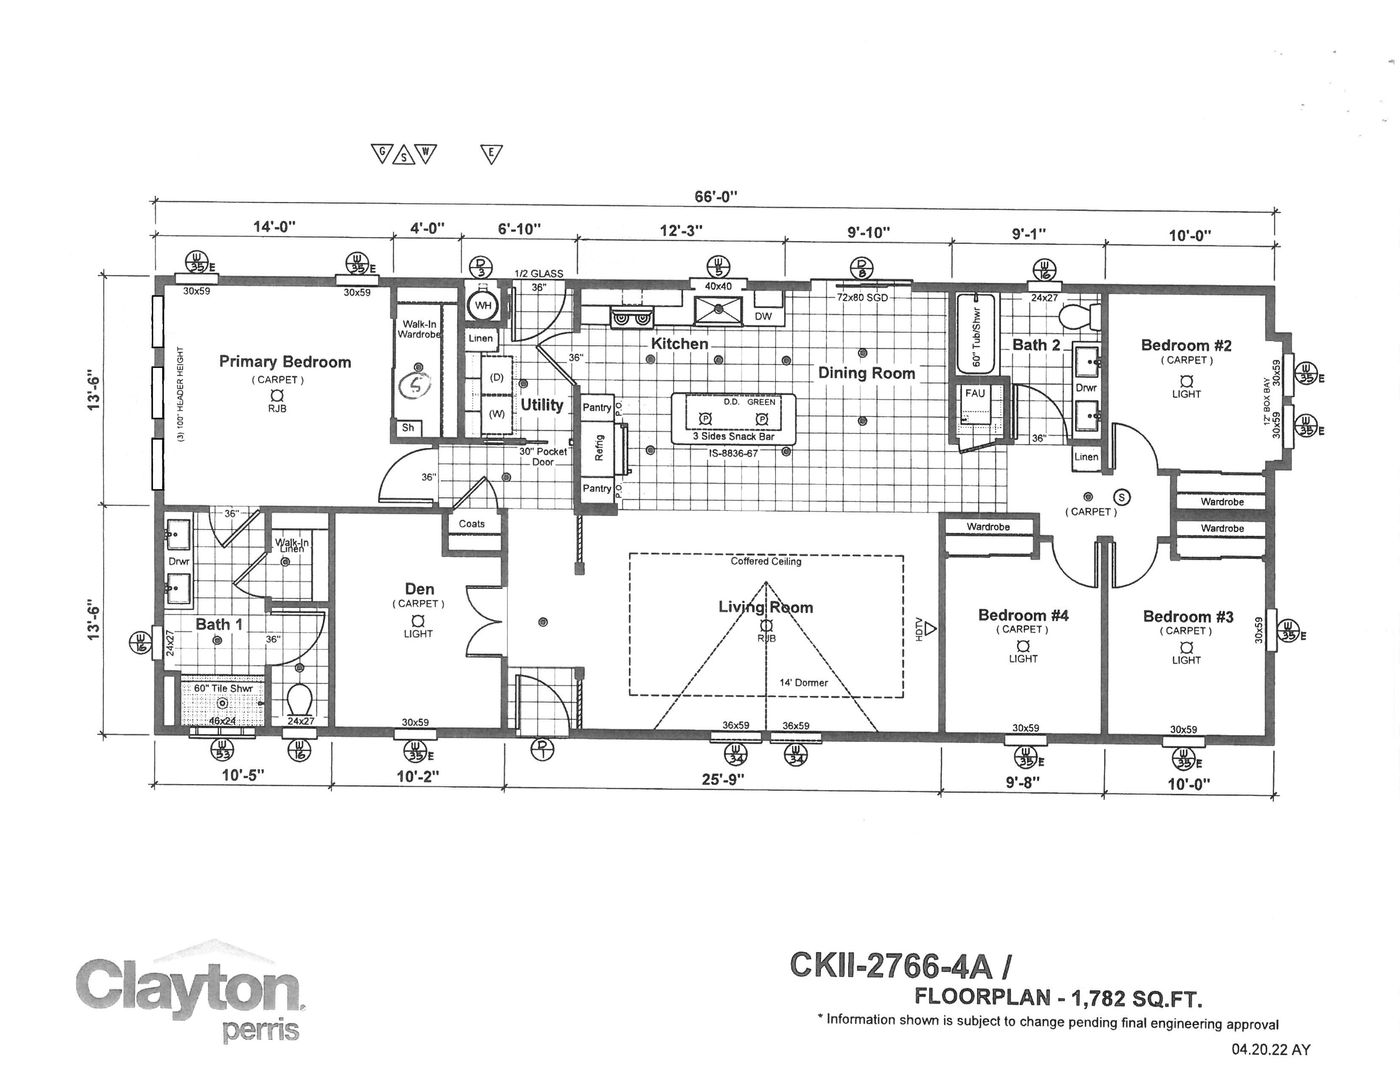 CKII 2766 SAN LOUIS floorplan image